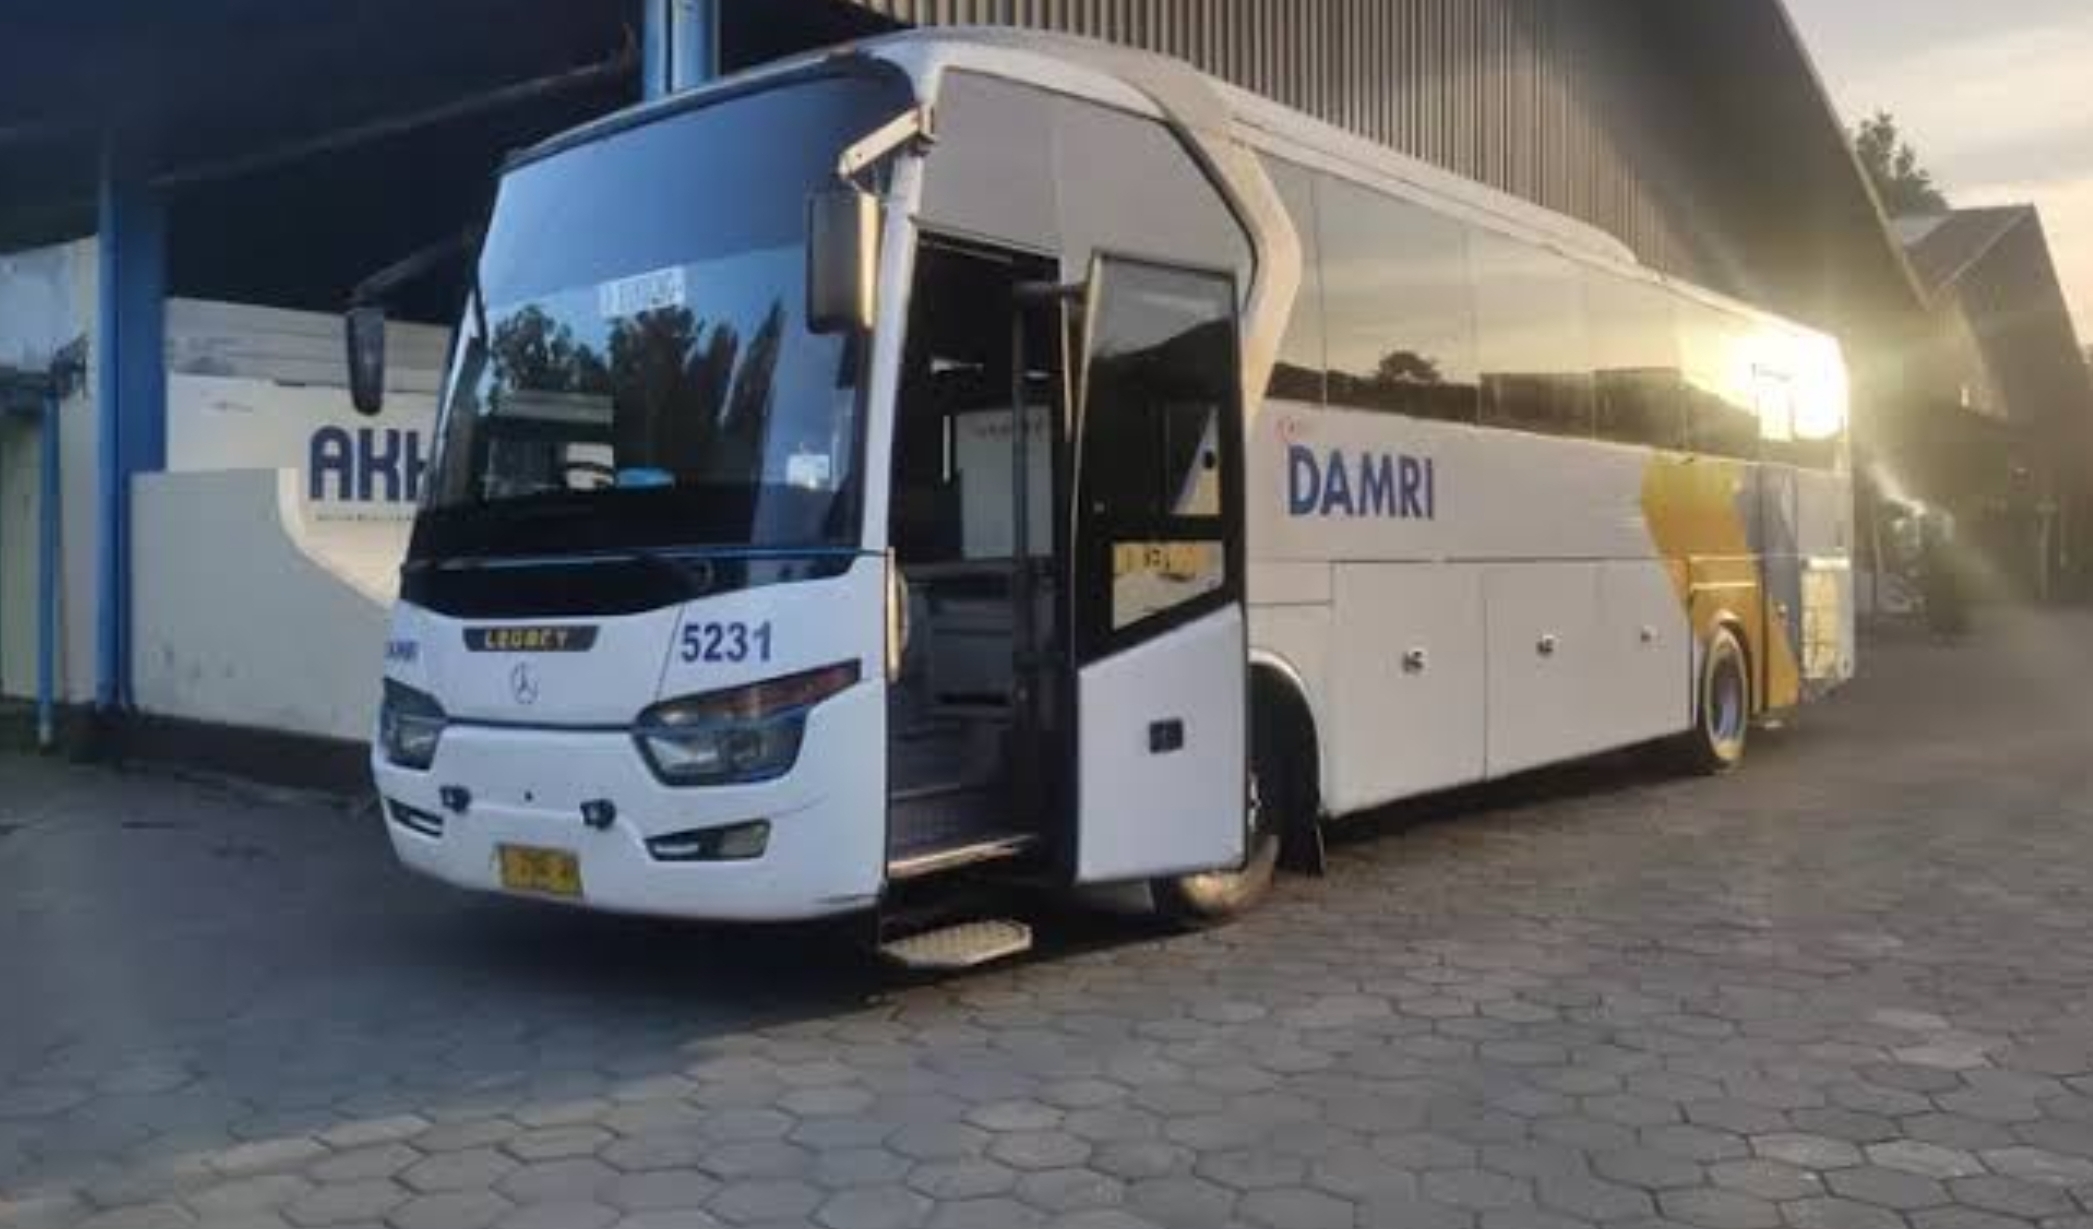 Jadwal Bus Damri Bandung ke Bandara Kertajati, Berangkat Tiap 1 Jam